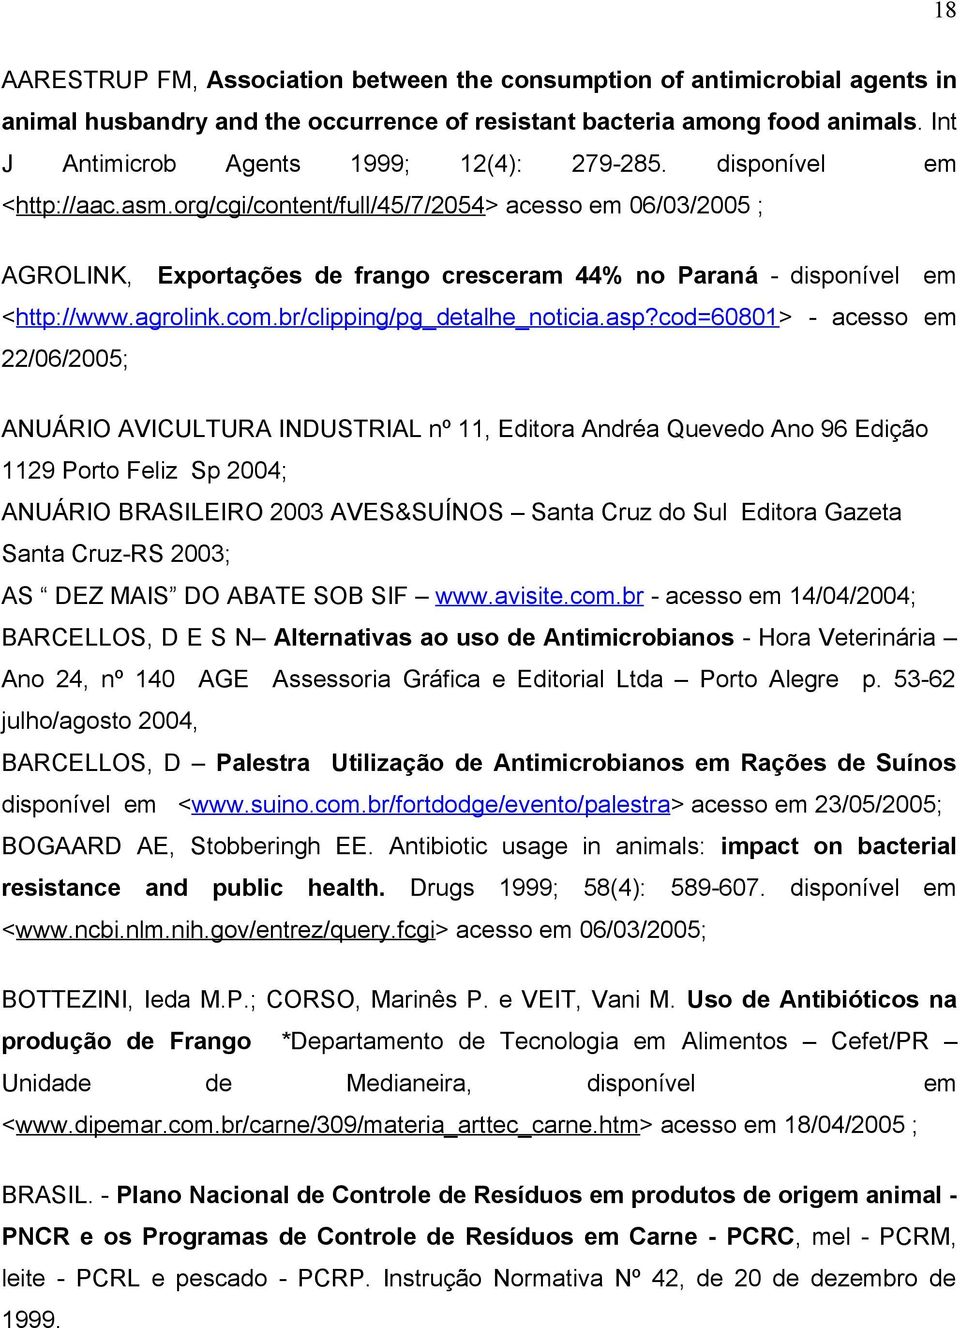 org/cgi/content/full/45/7/2054> acesso em 06/03/2005 ; AGROLINK, Exportações de frango cresceram 44% no Paraná - disponível em <http://www.agrolink.com.br/clipping/pg_detalhe_noticia.asp?